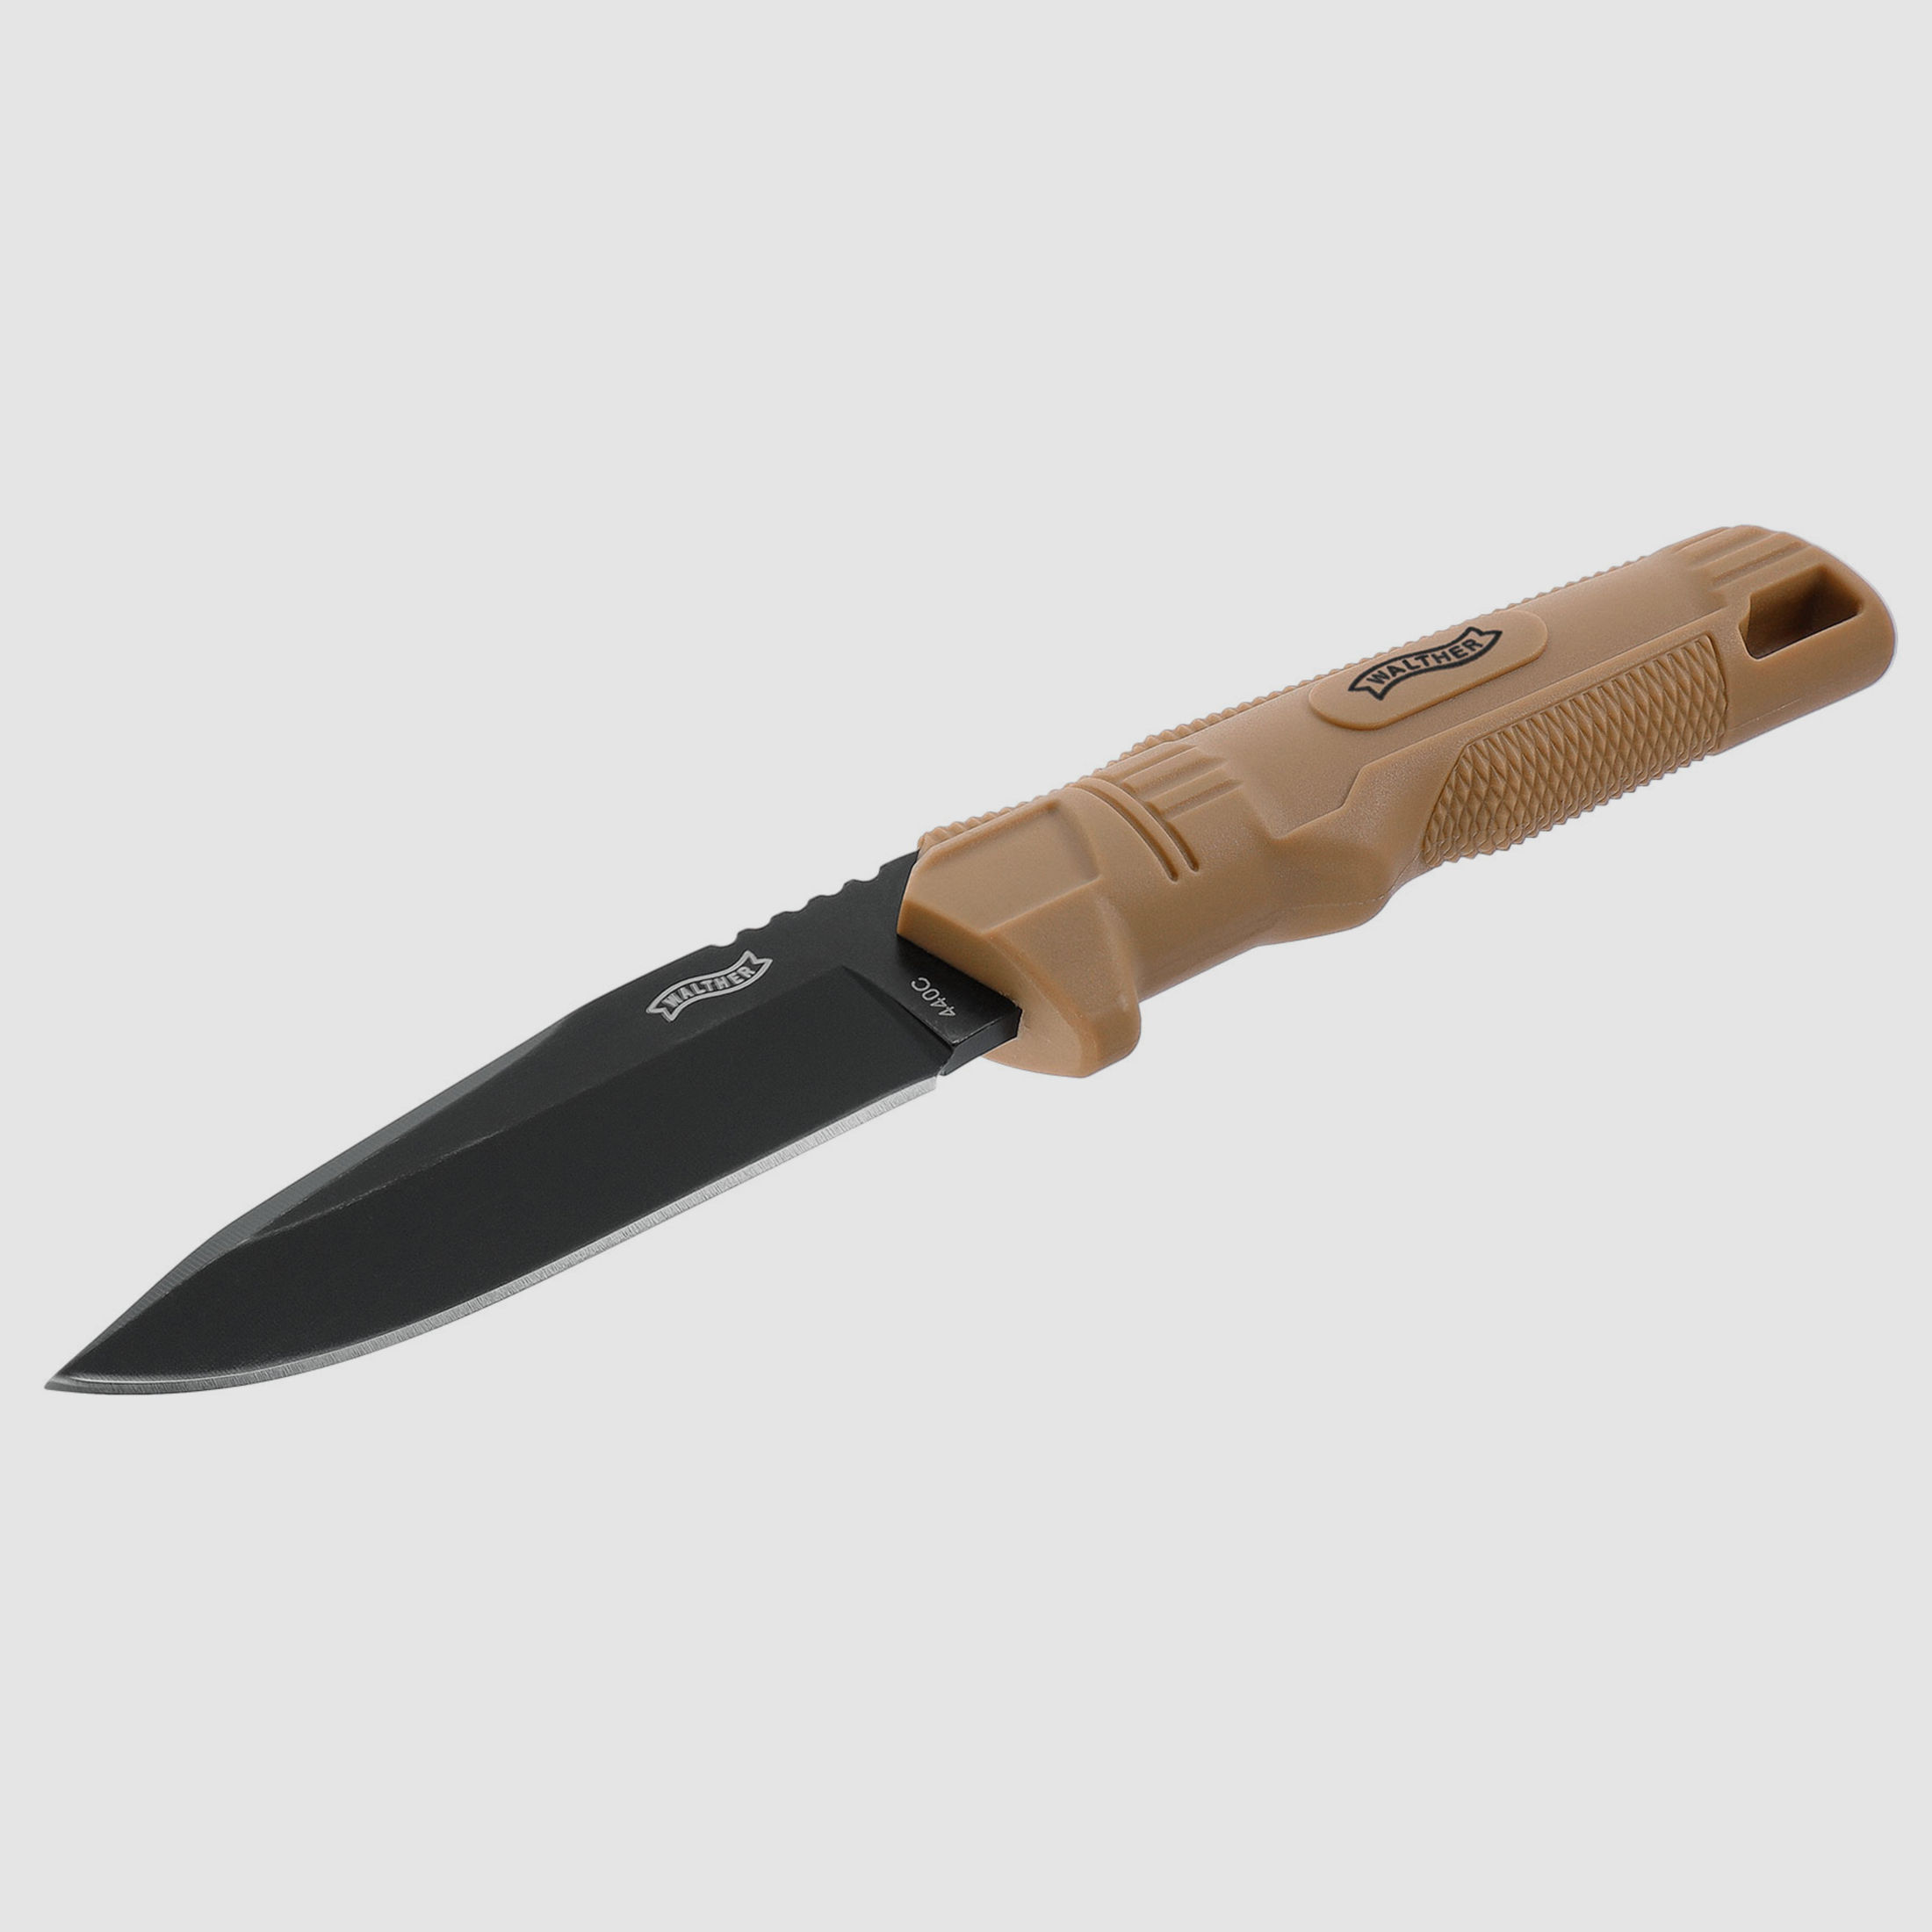 Umarex 5.0894 BUK Messer Fixed Blade BLK-FDE